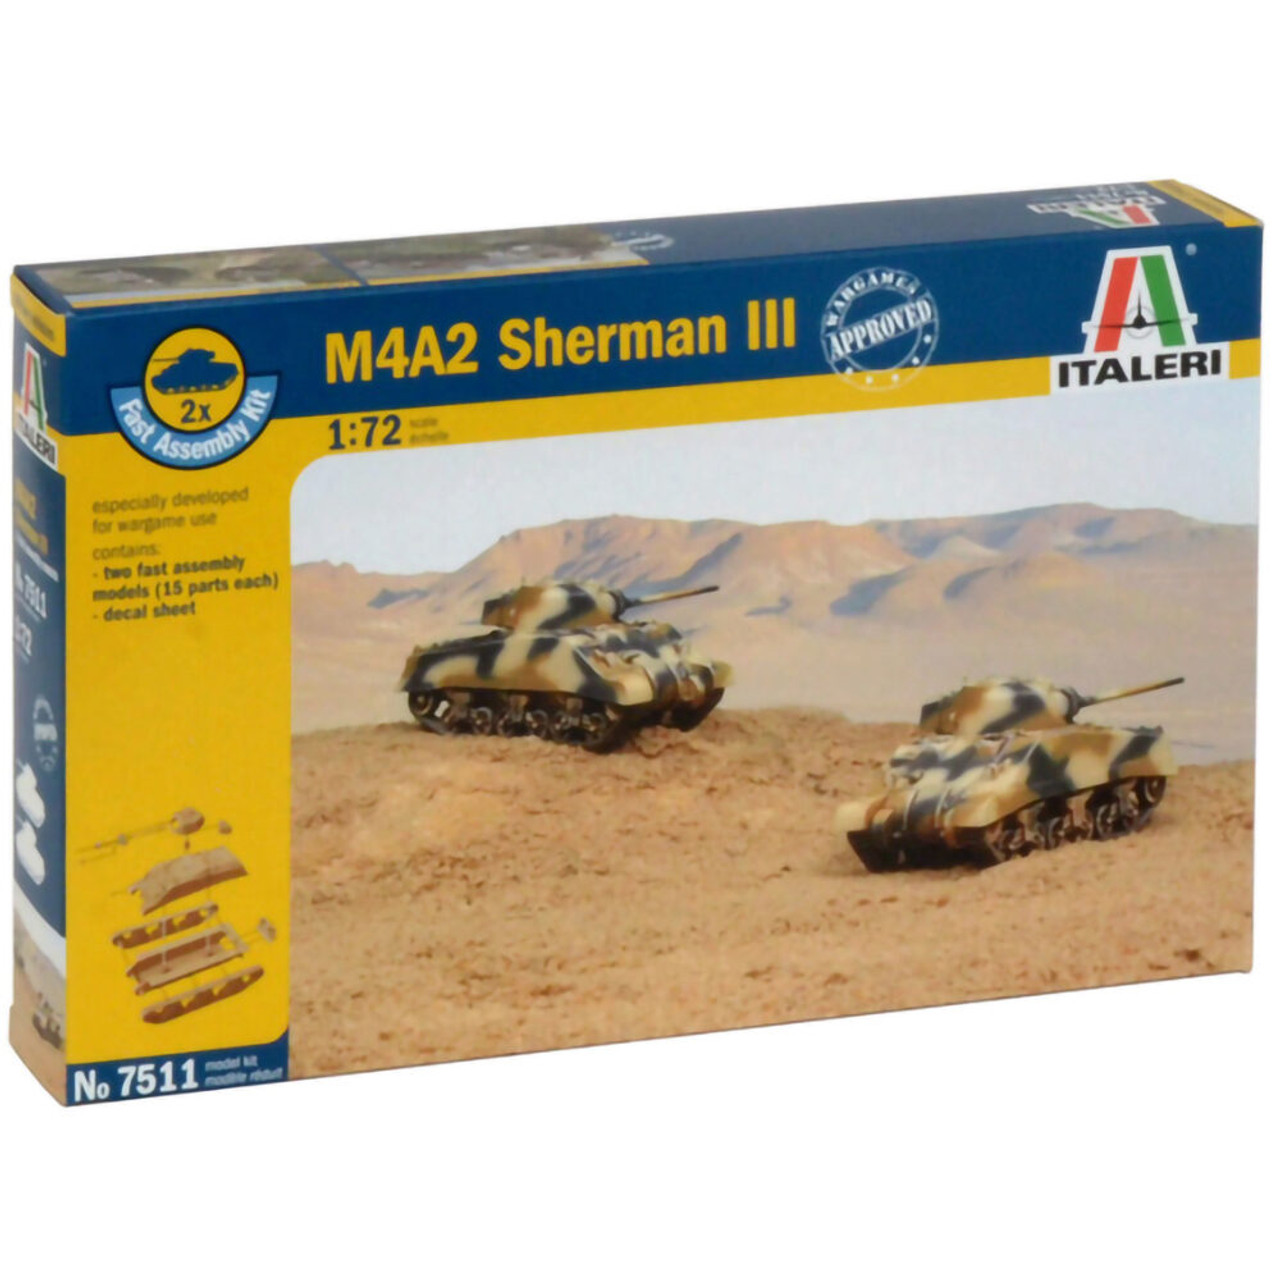 M4A2 Sherman III 1/72 Kit 1:72 Scale Diecast Model by Italeri ...